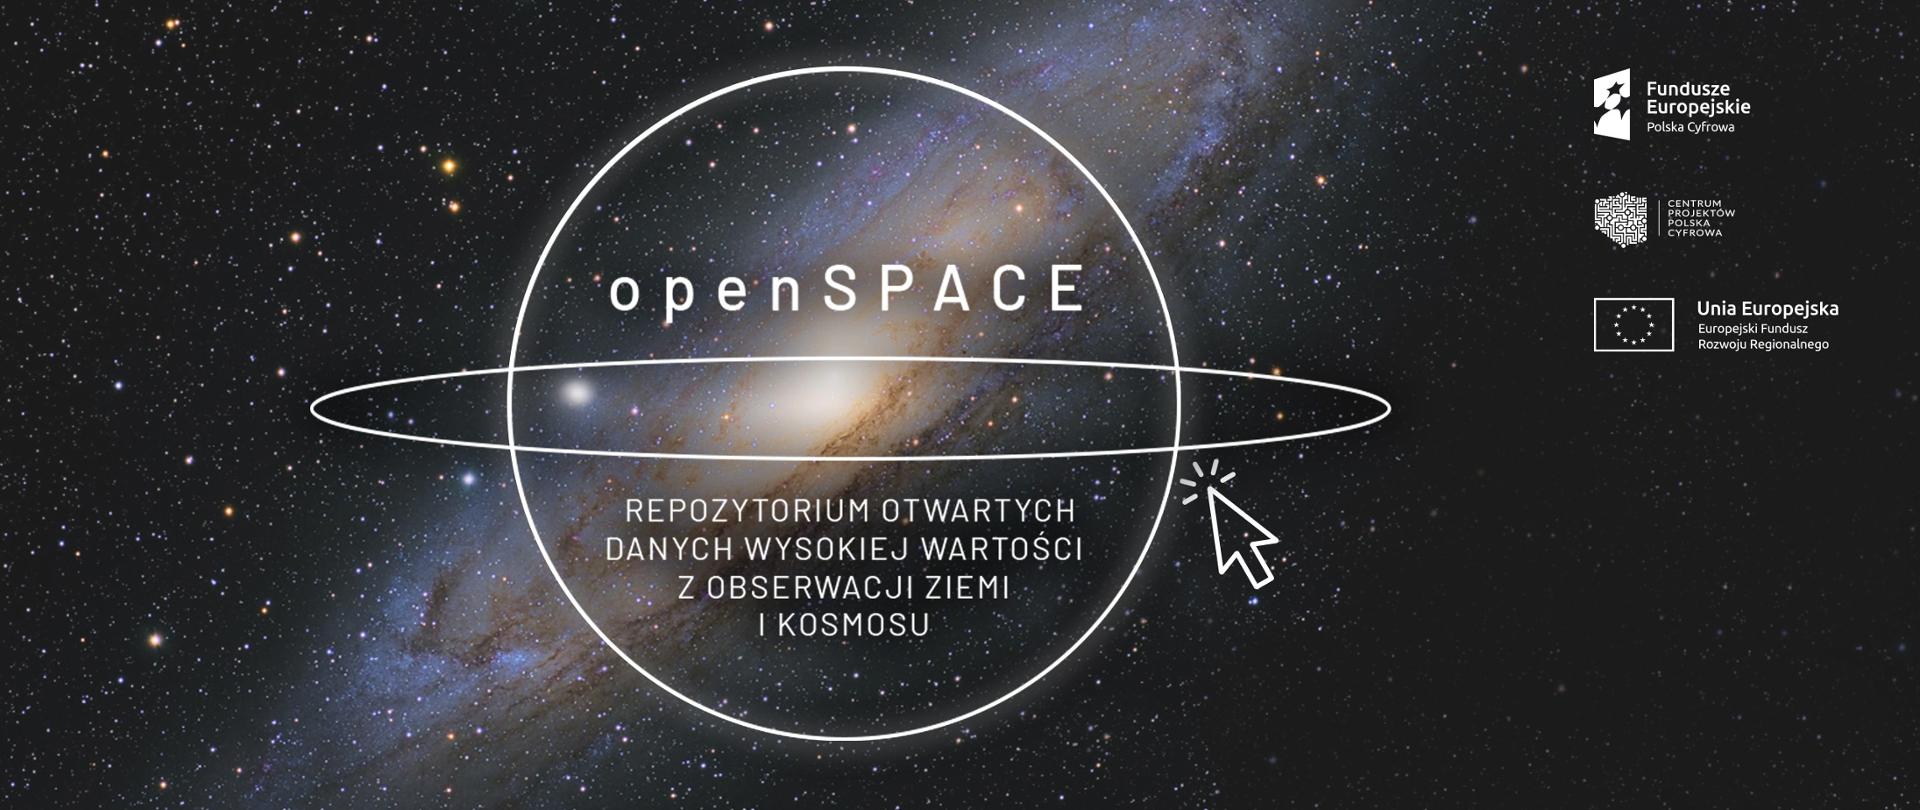 OpenSPACE. Repozytorium otwartych danych wysokiej wartości z obserwacji ziemi i kosmosu.